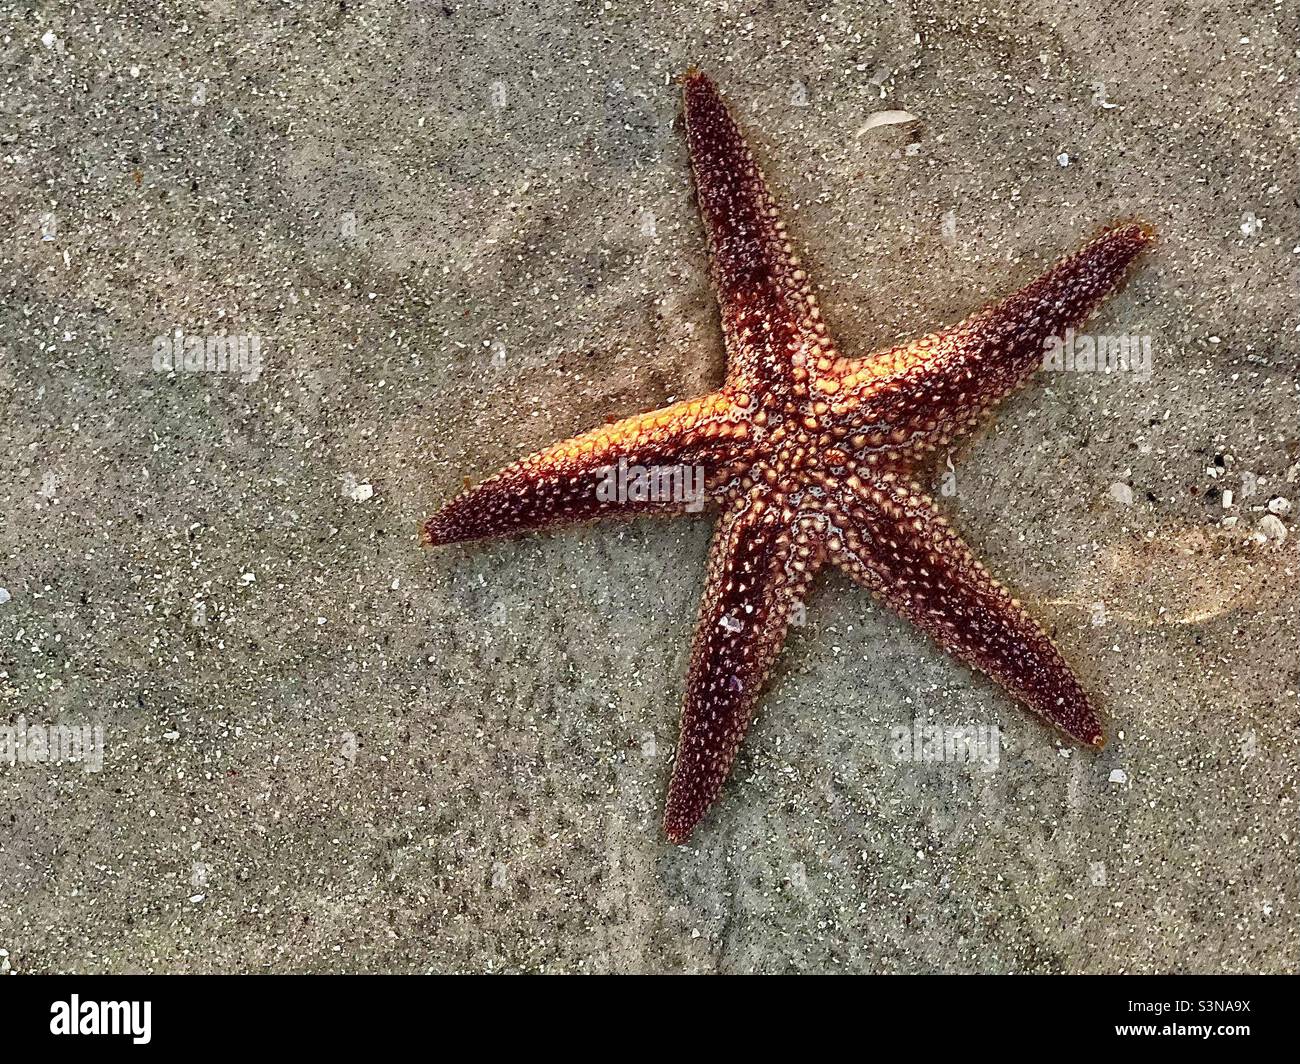 Vivi le stelle marine nella sabbia lasciata alle spalle in una piscina marea a bassa marea, in attesa della marea per tornare Foto Stock